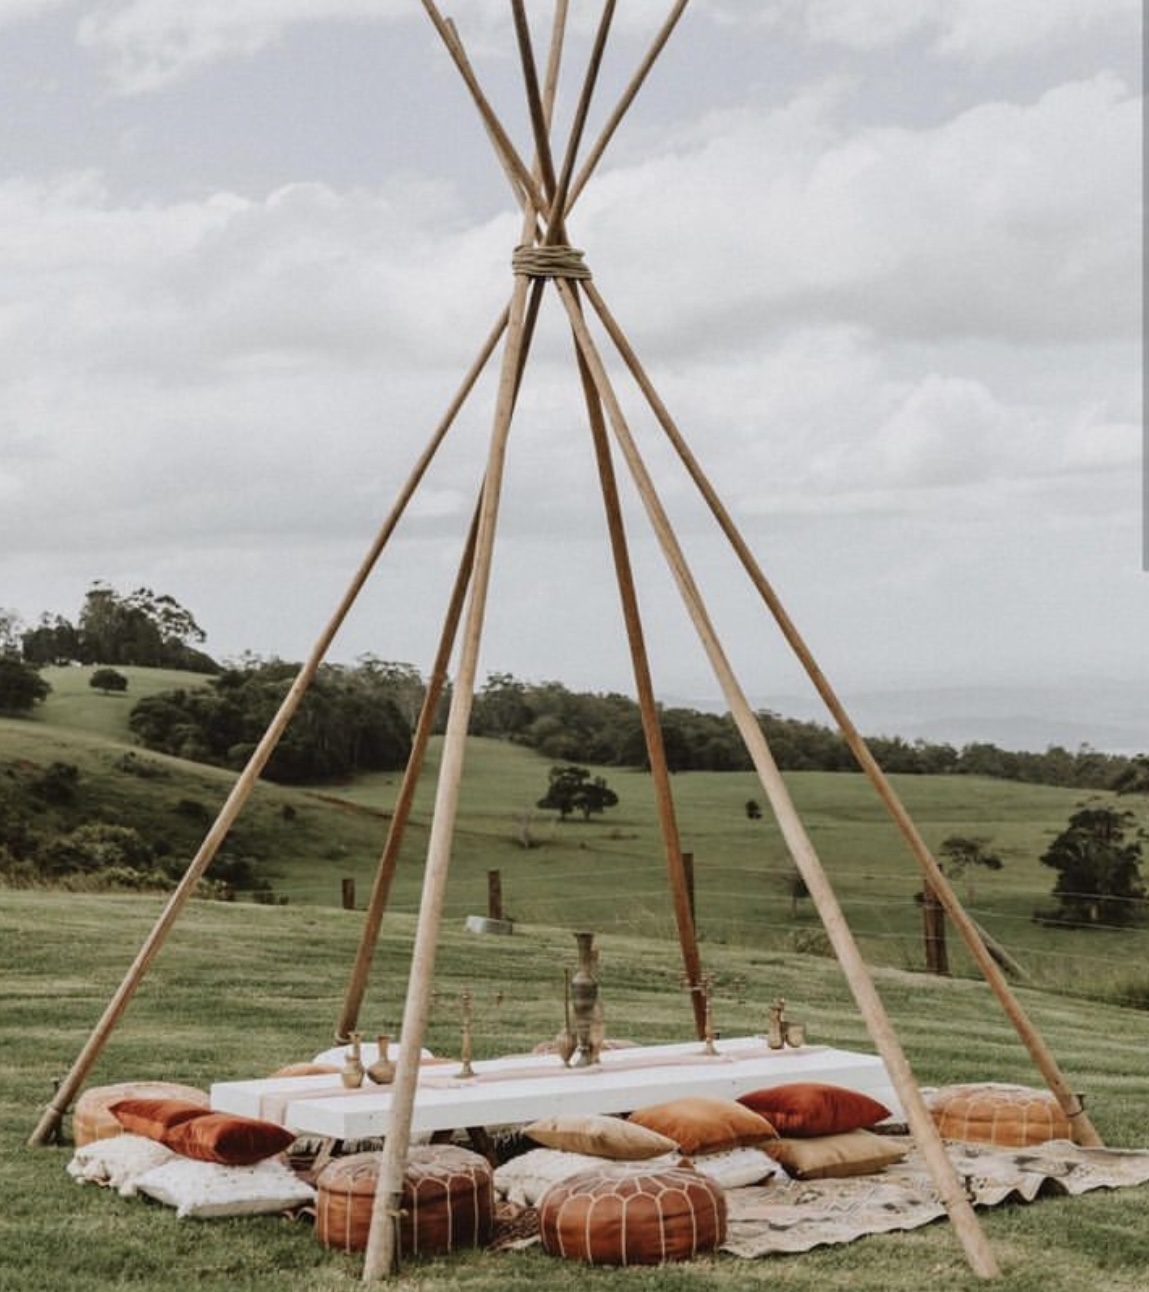 Tipi set up for wedding elopement picnic